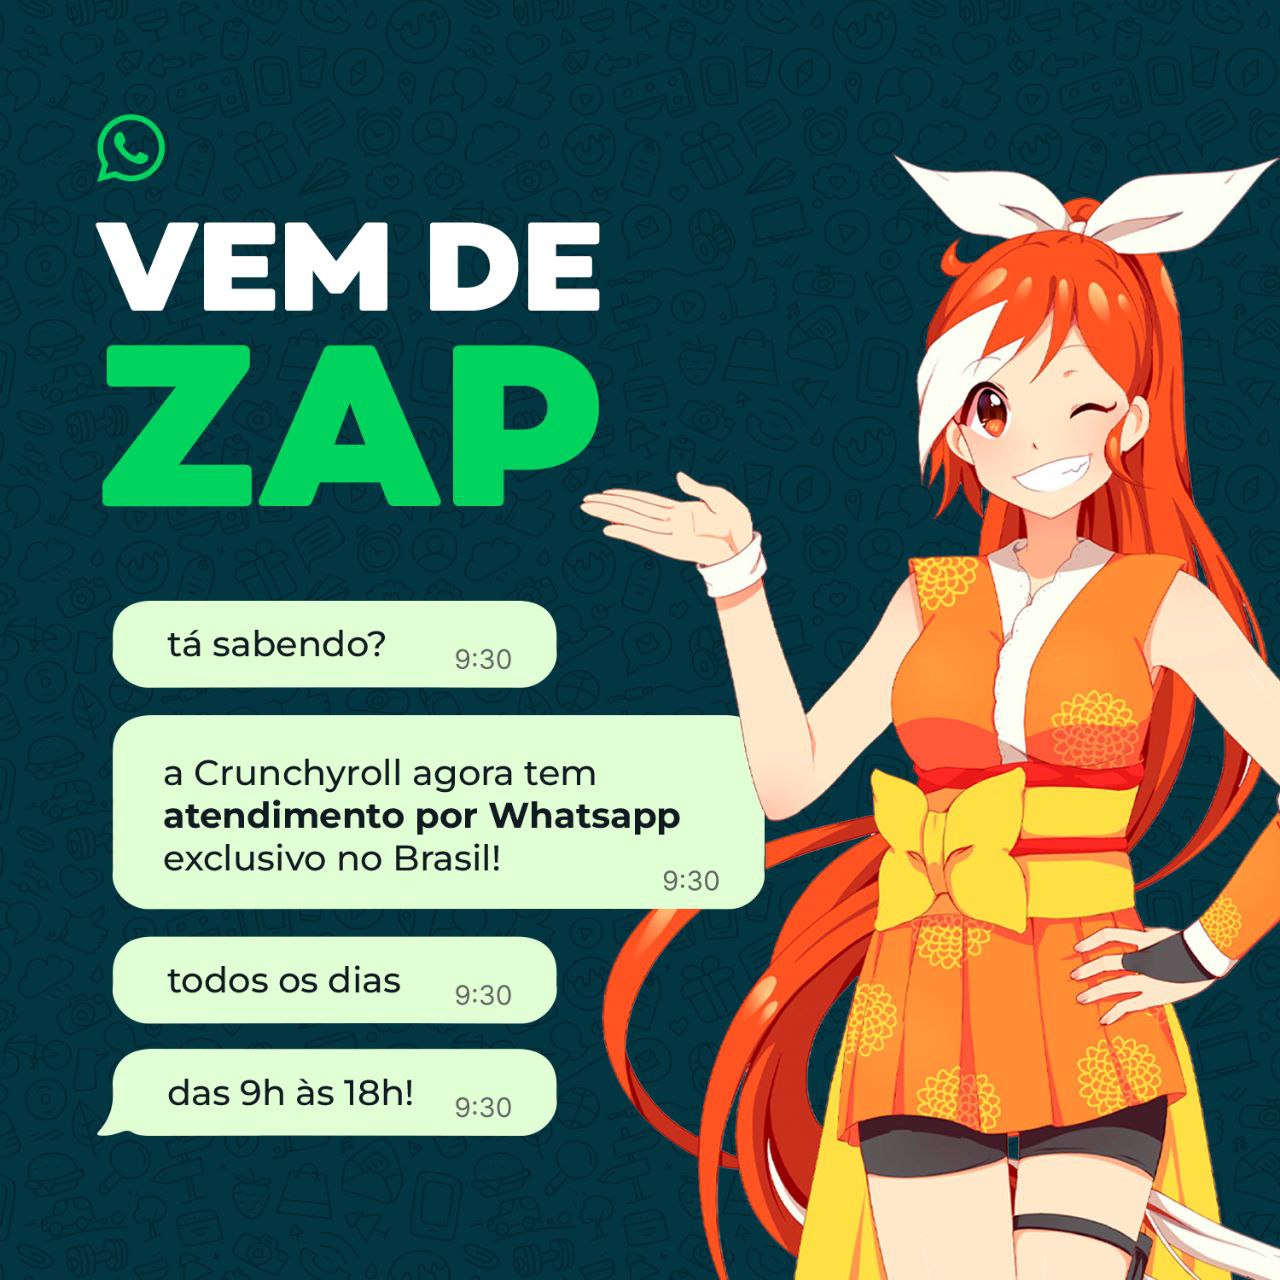 Crunchyroll Brasil ✨ on X: Ela só percebeu que você é uma